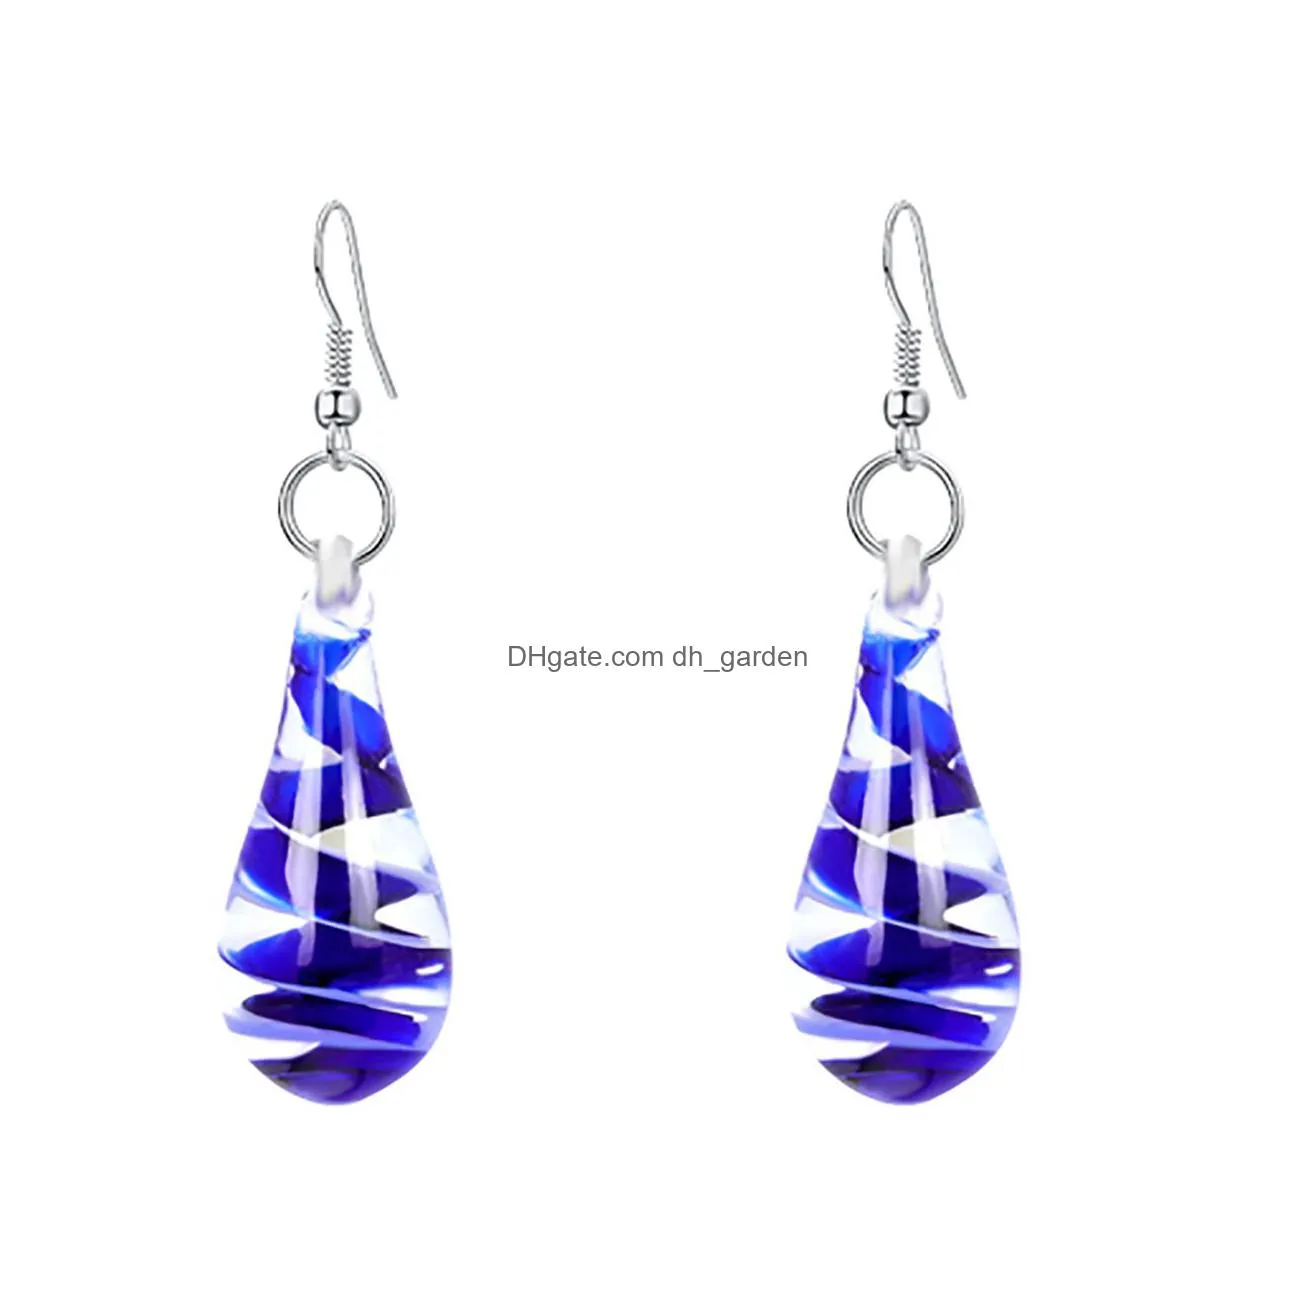 colorful murano lampwork glass dangle earrings stainless steel flower spiral inside pendant drop earring jewelry